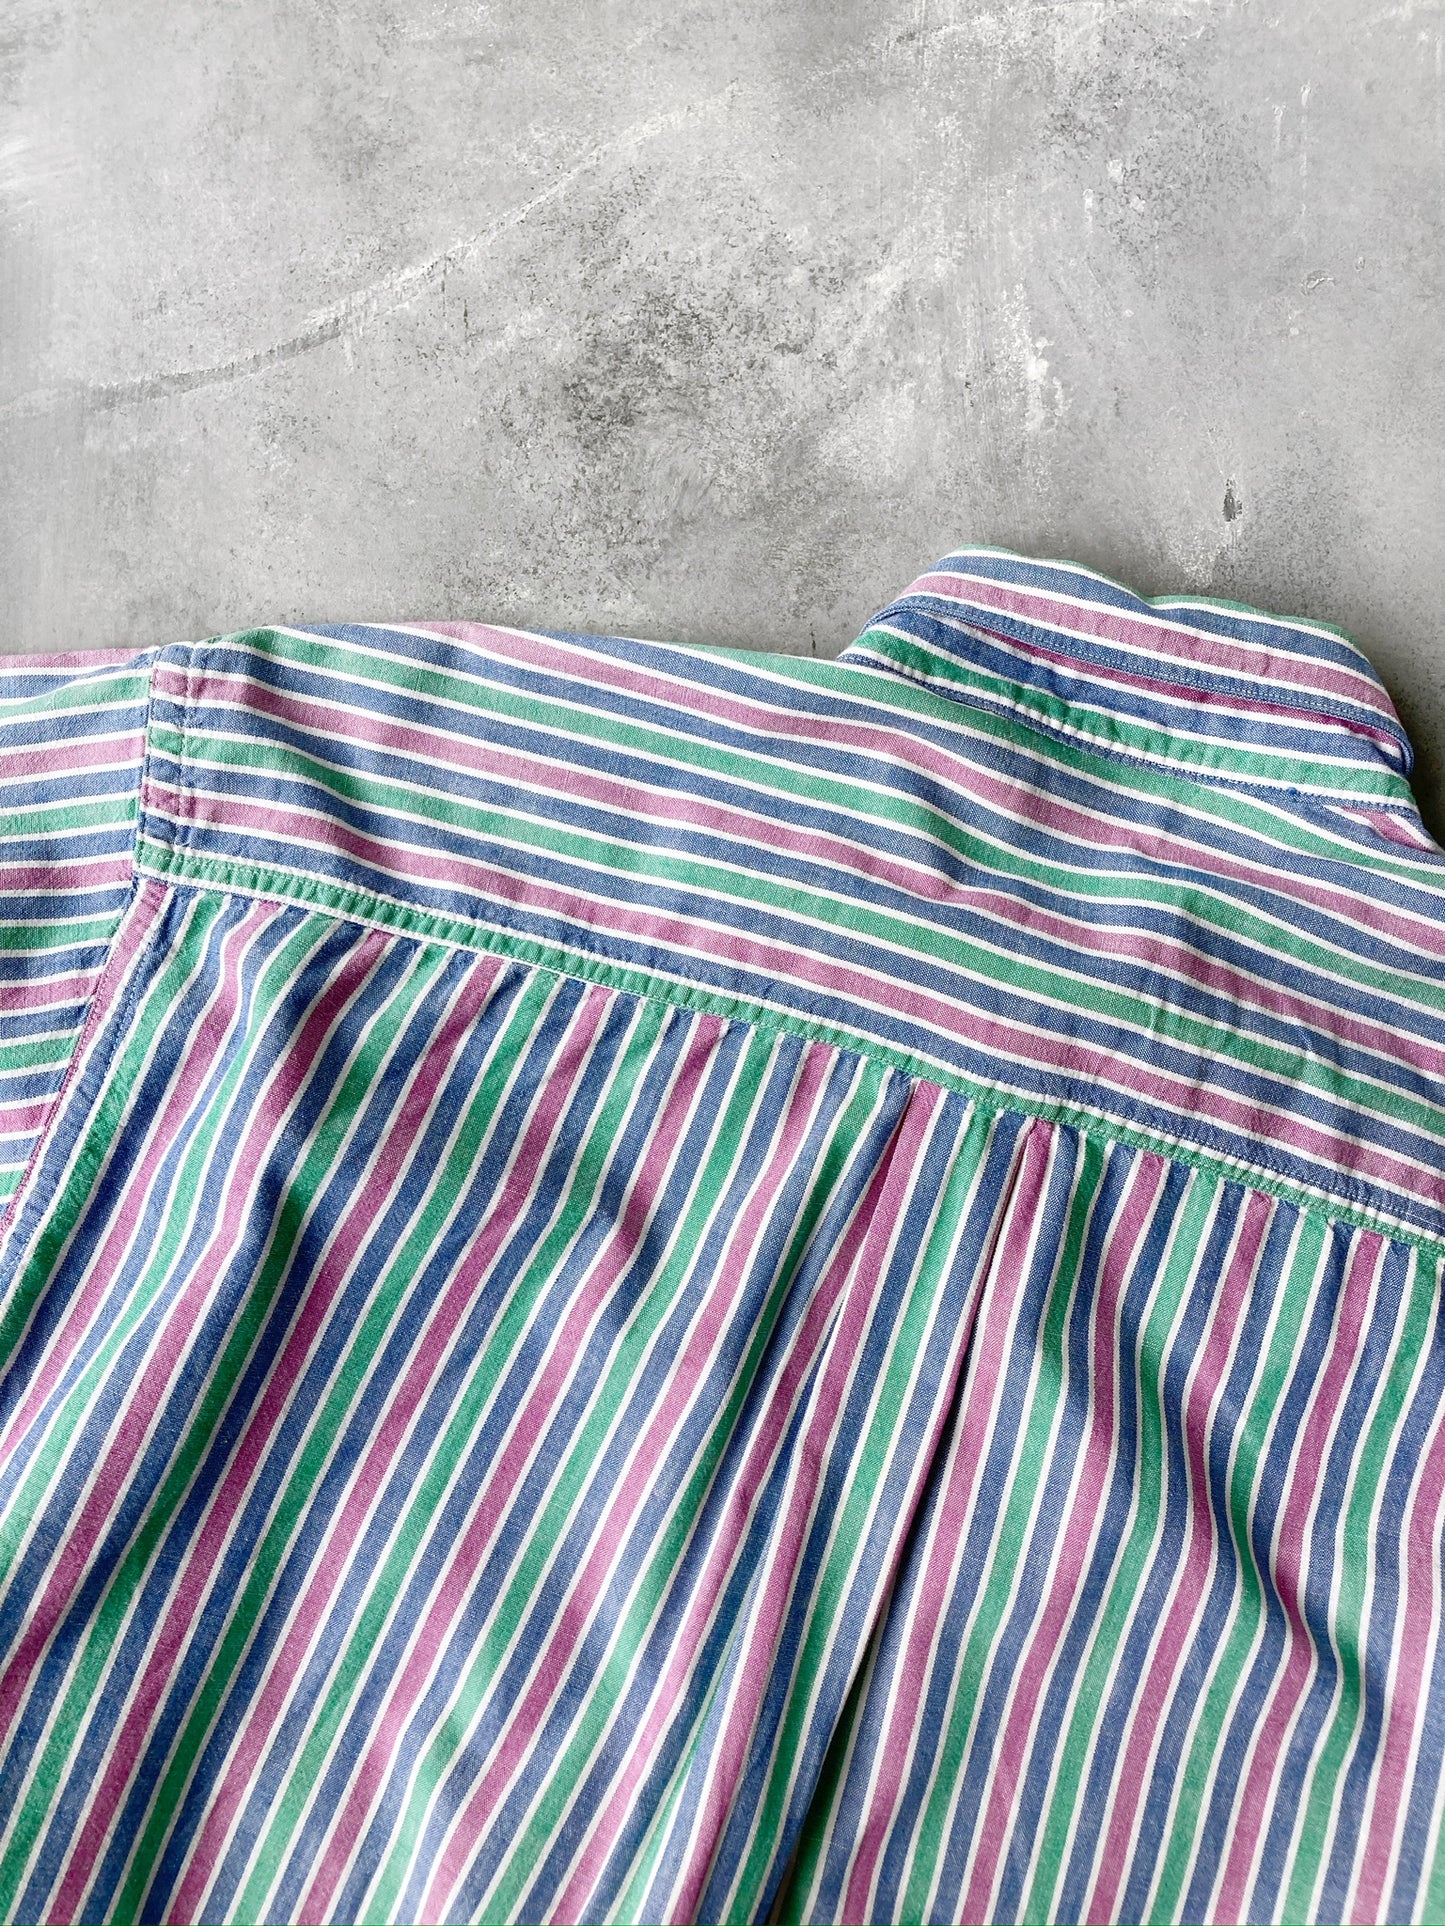 L.L. Bean Pastel Stripe Shirt 90's - Large / XL